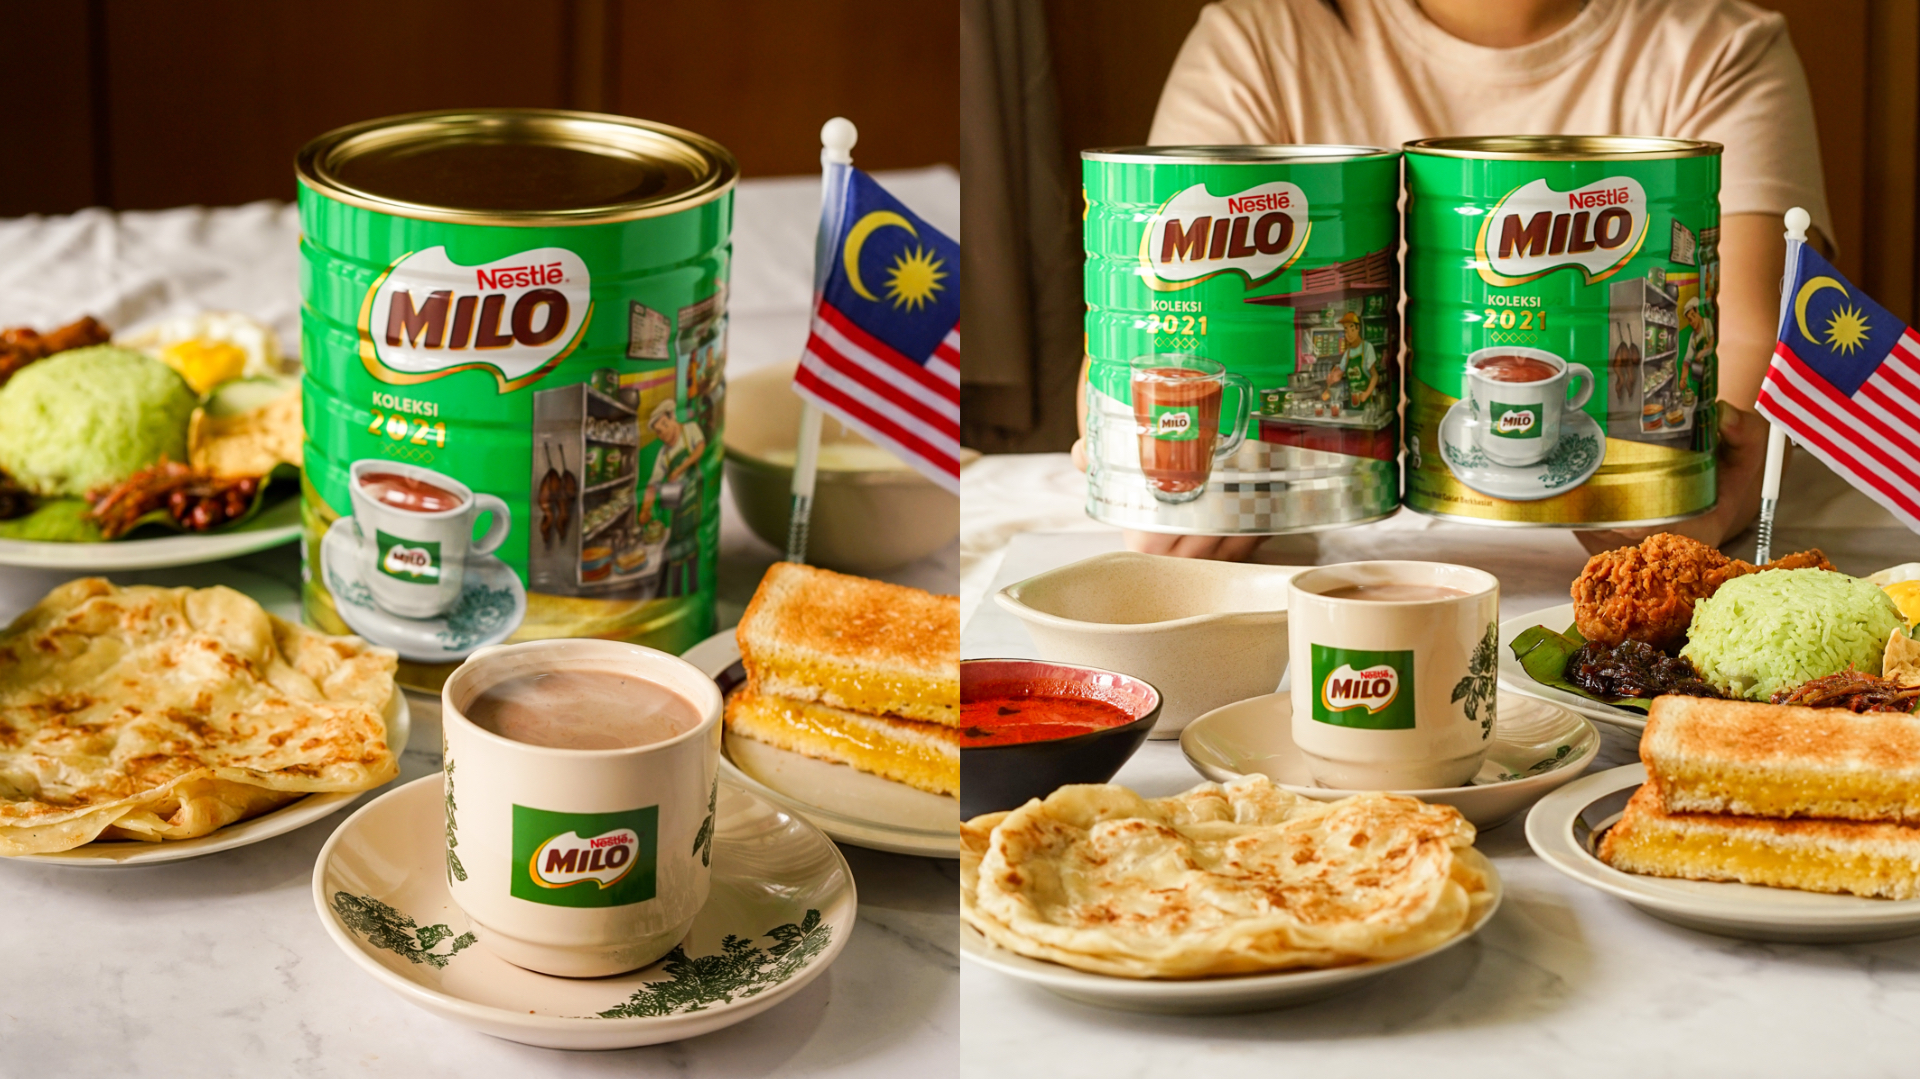 参与者只需拍摄与MILO最搭配的食物以及限量版MILO铁罐合照，即可有机会赢取MILO特别商品。-MILO提供-